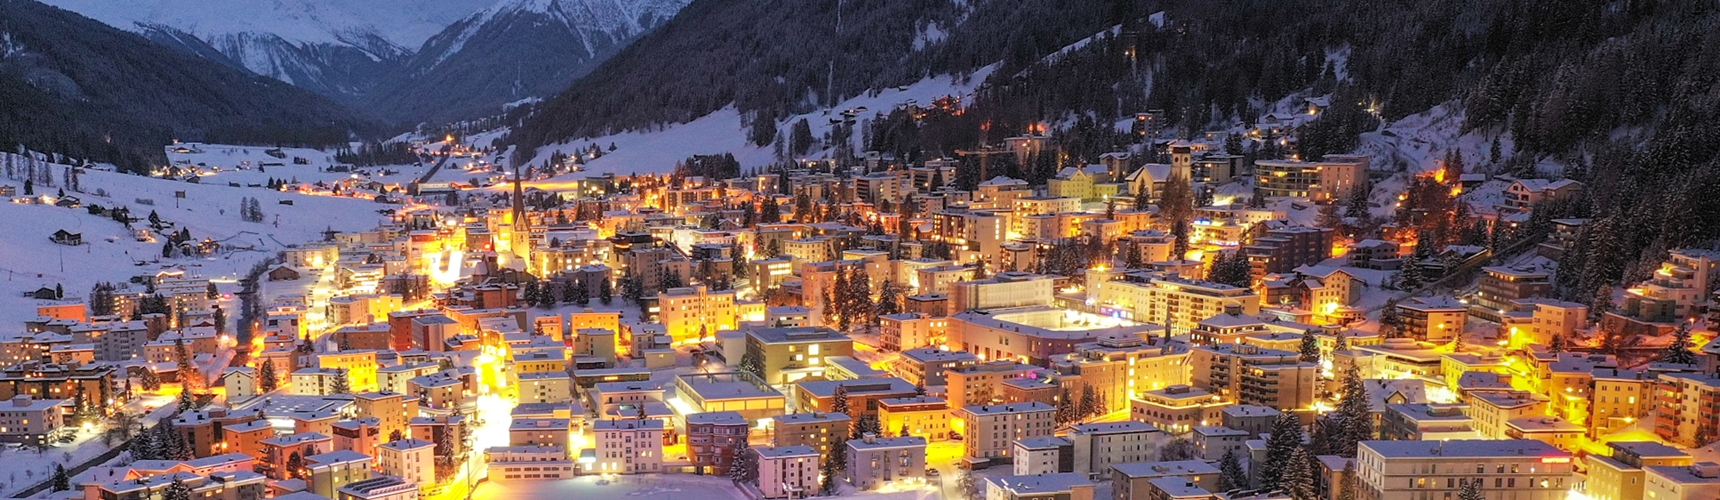 Luftbild vom winterlichen Davos am Abend